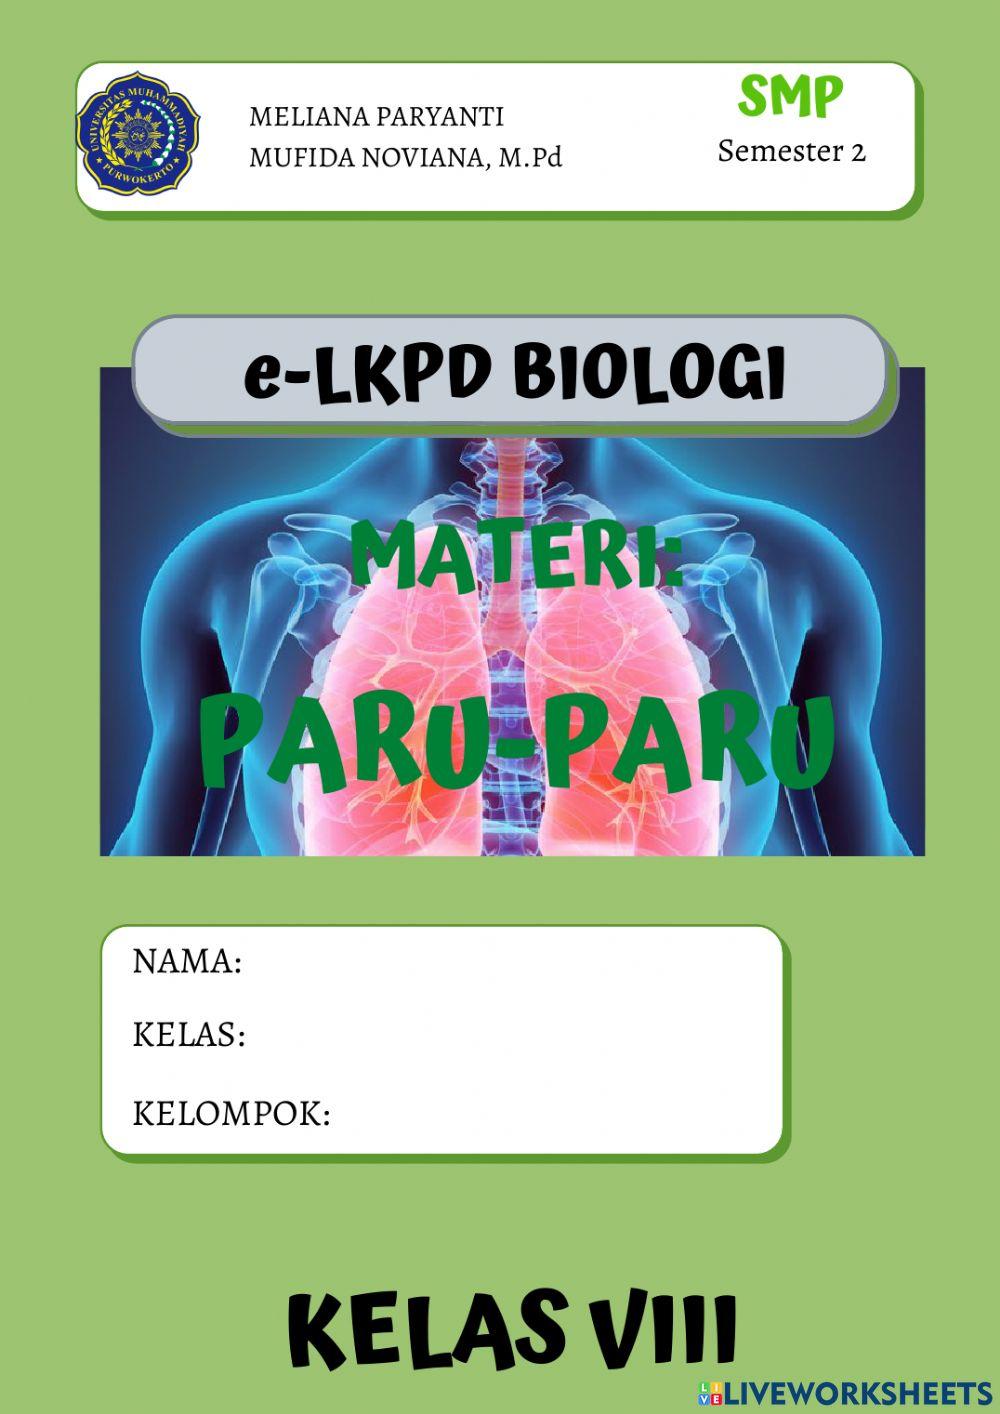 E-LKPD 2 (PARU-PARU)